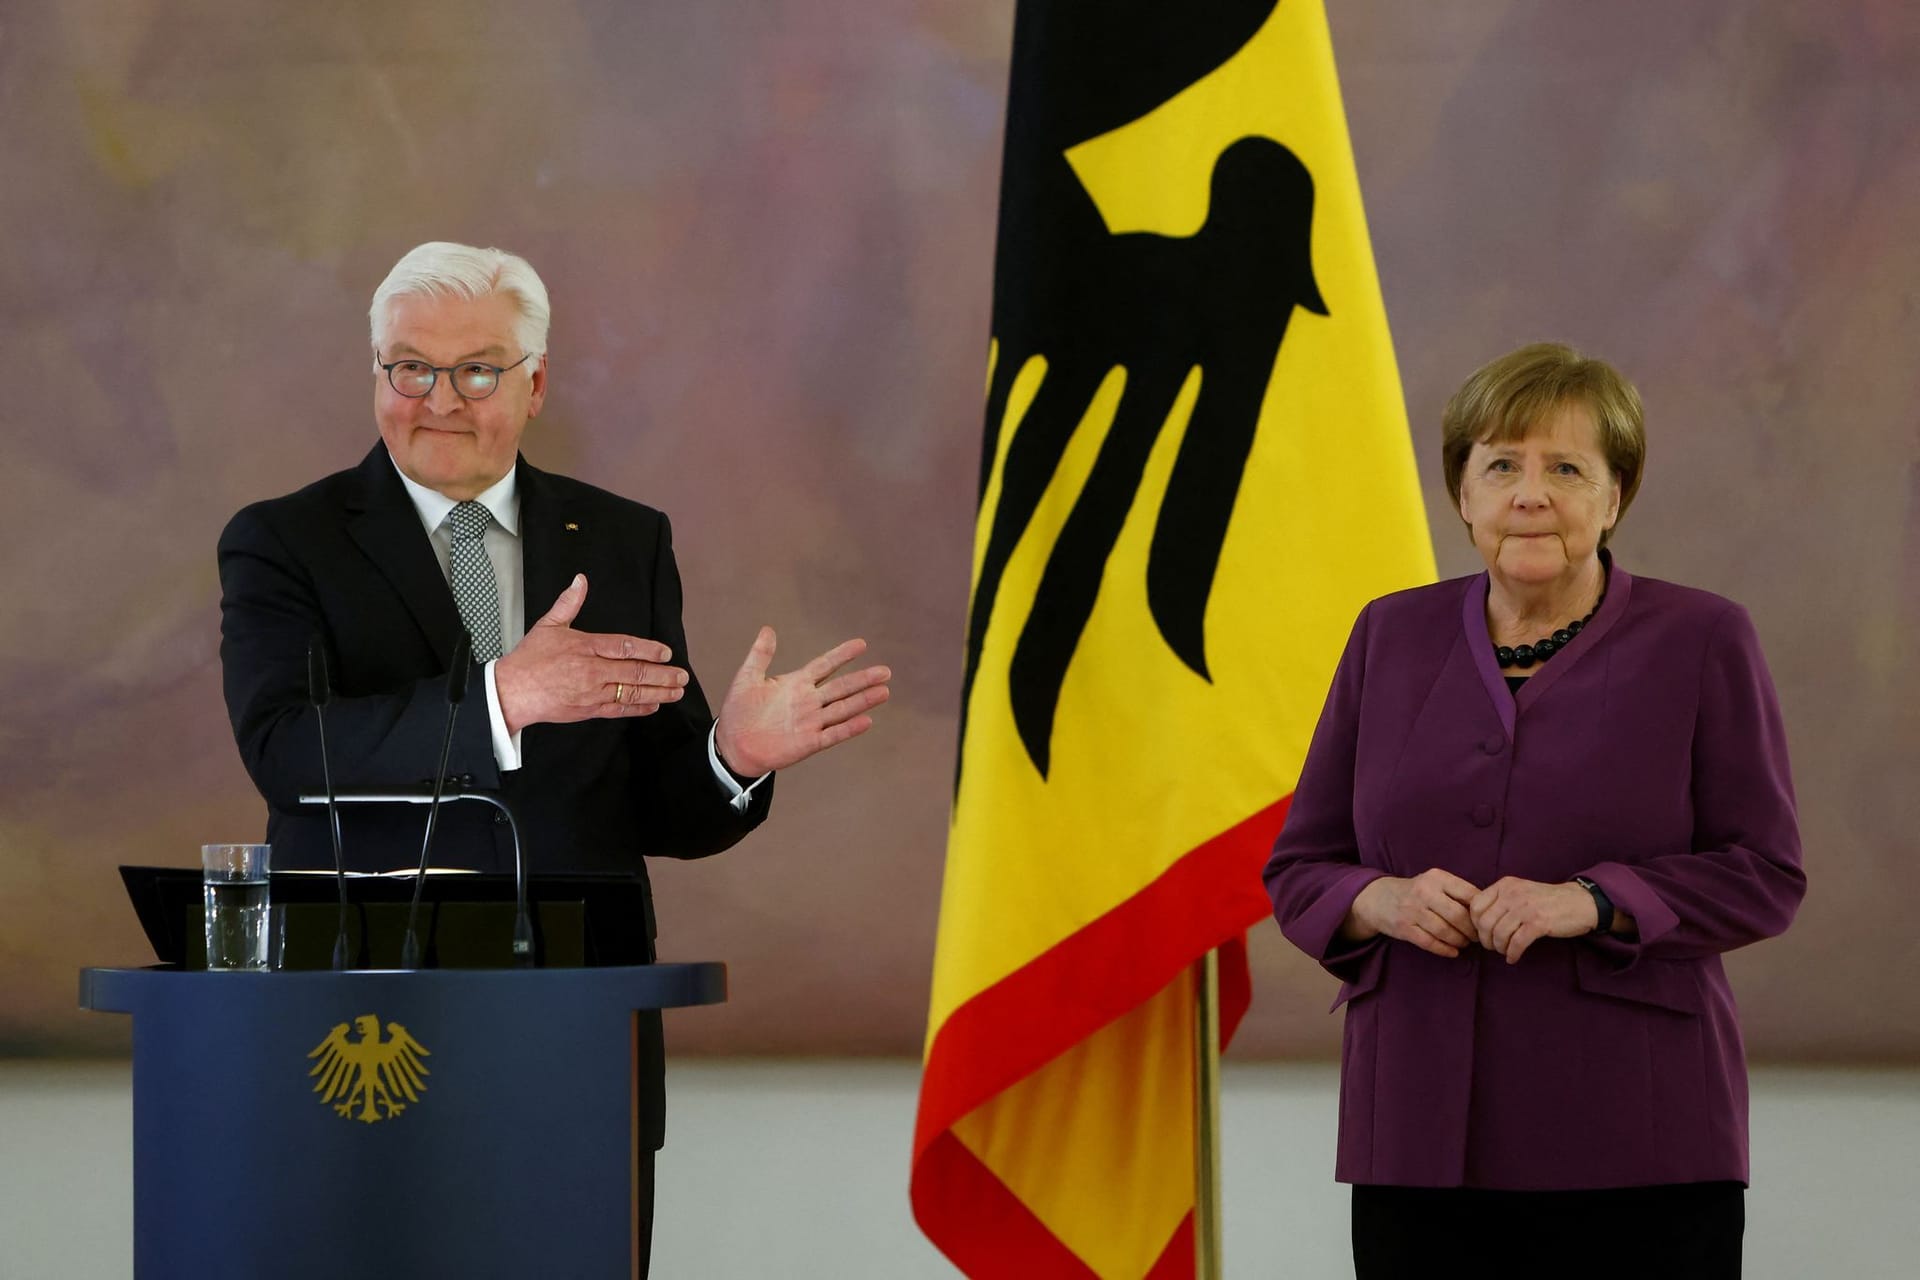 "16 Jahre lang haben Sie Deutschland gedient – mit Ehrgeiz, mit Klugheit, mit Leidenschaft", sagte Steinmeier.